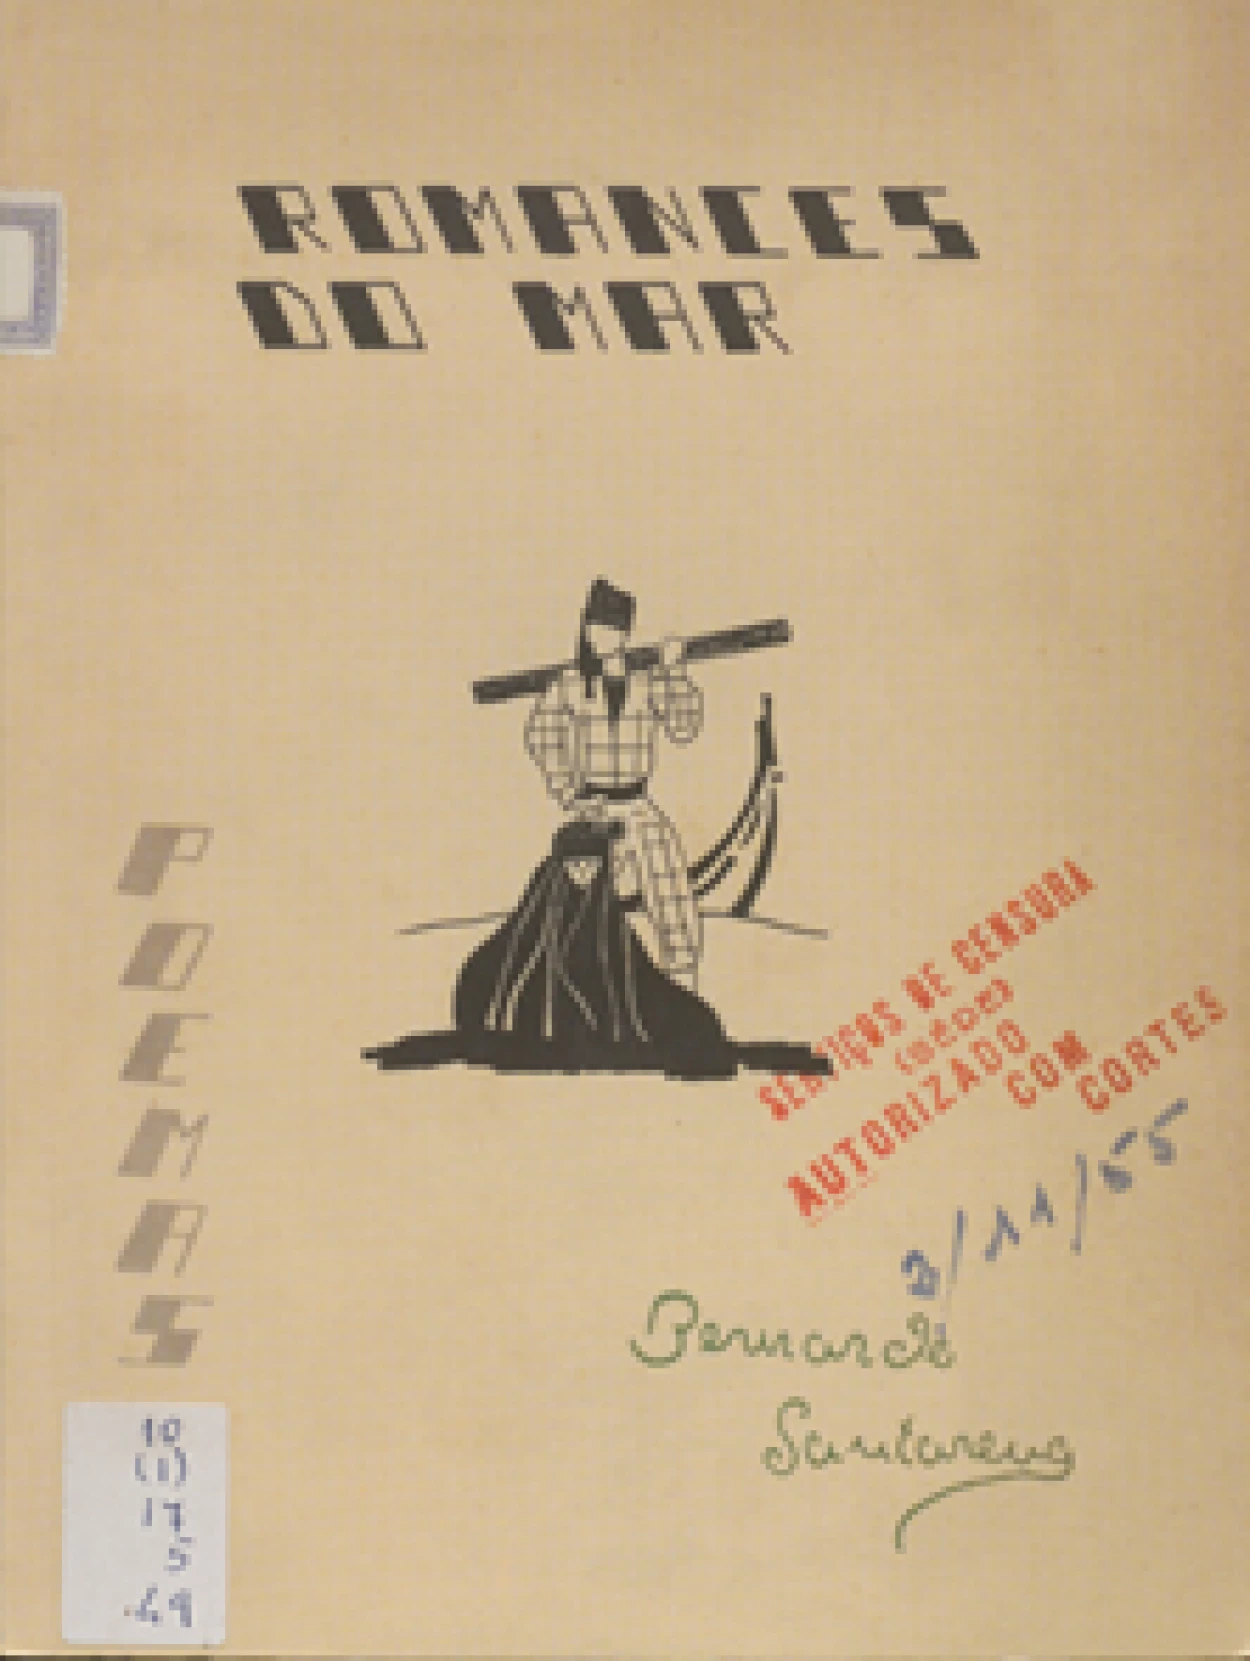 Bernardo Santareno, pseud.
Romances do mar.
Santarém : Tipografia Escolar, 1955.